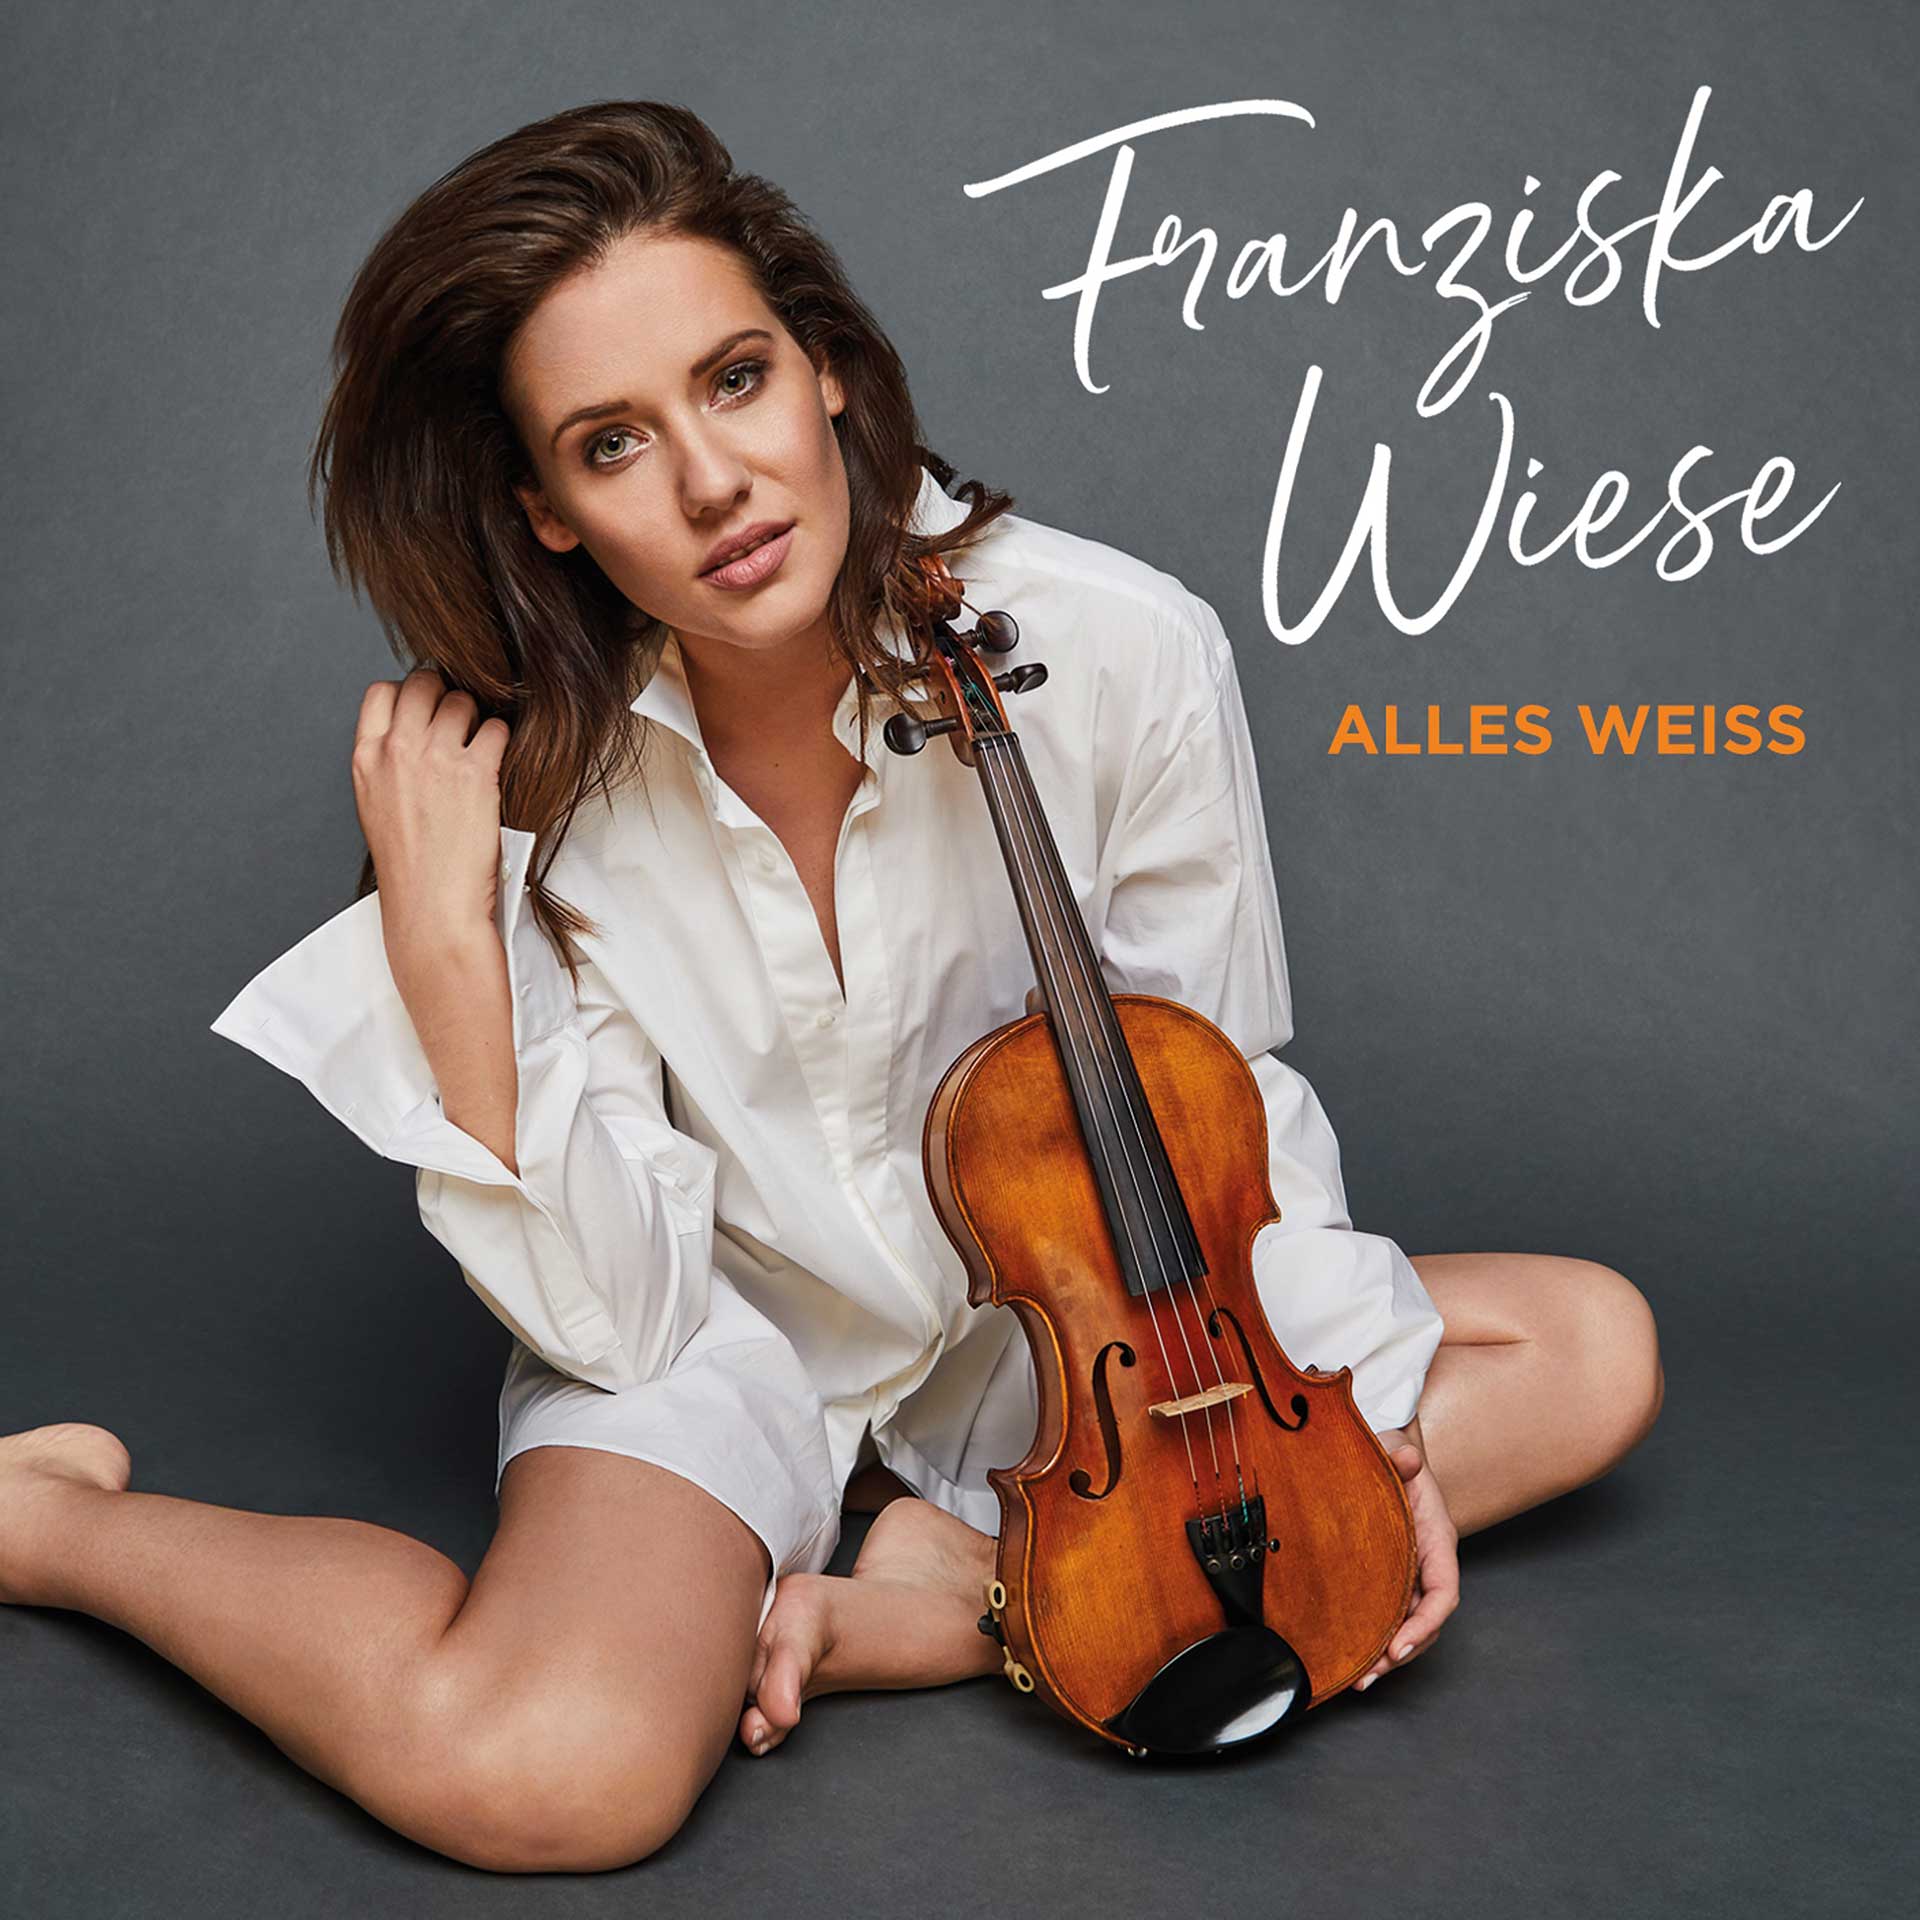 Franziska-Wiese-Alles-Weiss-Album-Cover